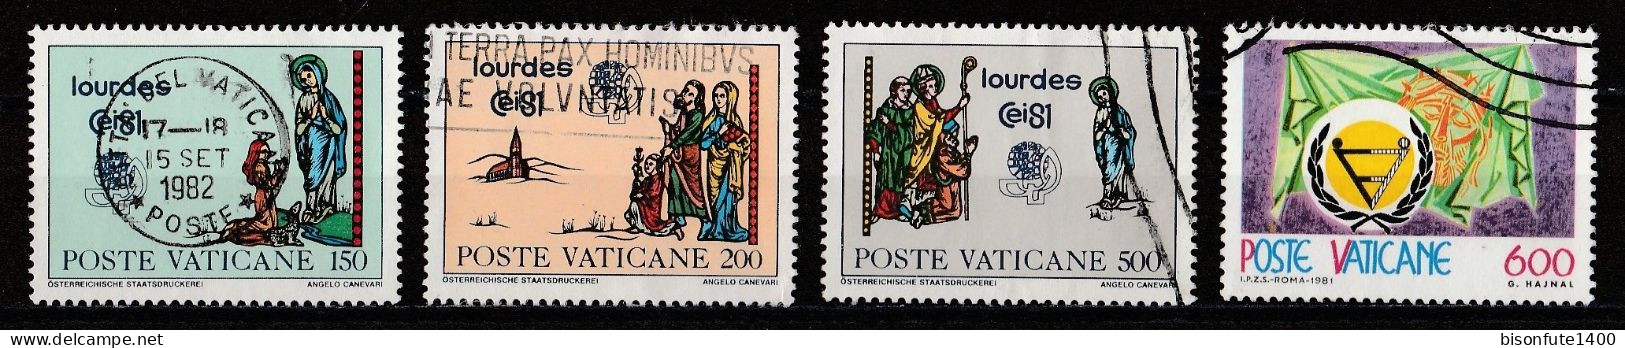 Vatican 1981 : Timbres Yvert & Tellier N° 702 - 703 - 704 - 708 - 709 - 710 - 711 - 712 - 713 Et 714 Oblitérés - Gebruikt